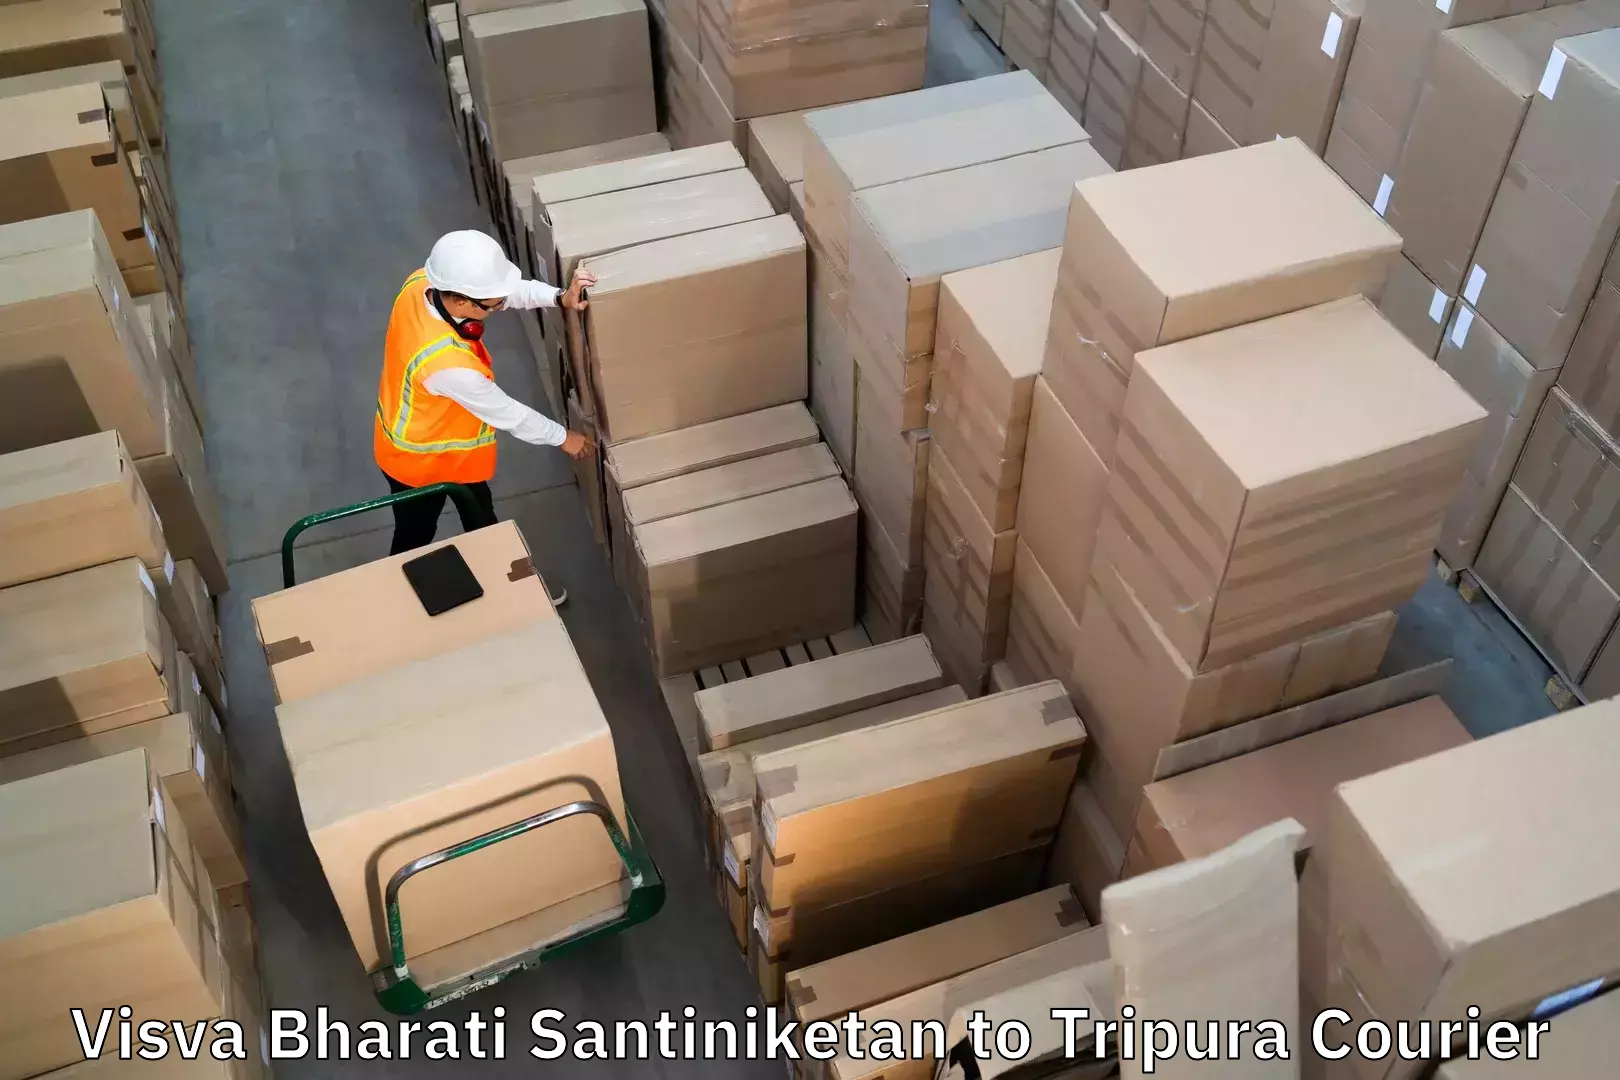 Luggage delivery providers Visva Bharati Santiniketan to Agartala